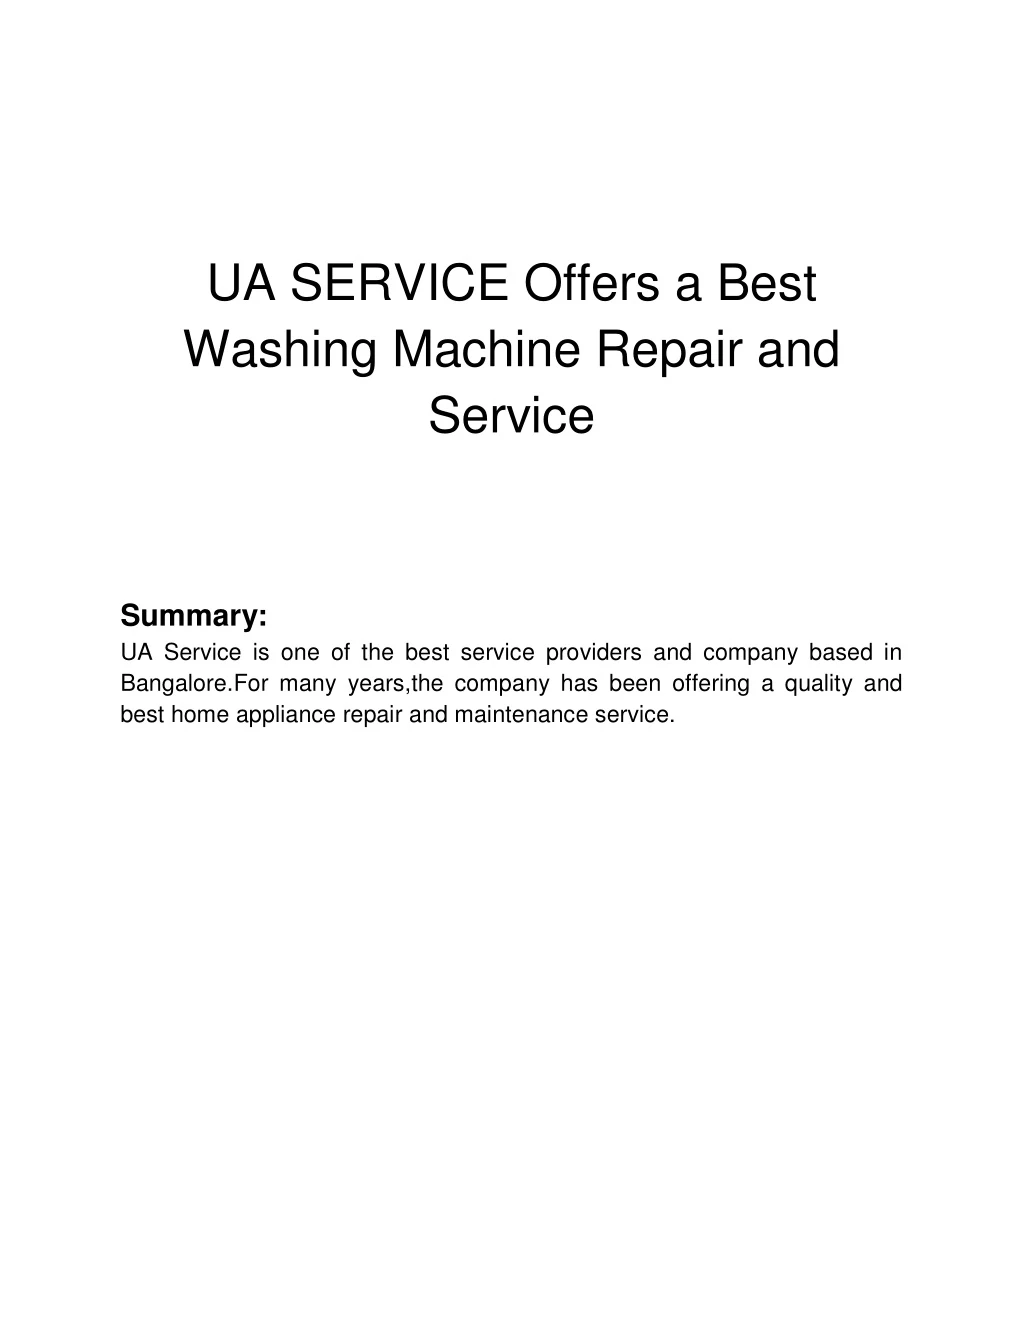 ua service offers a best washing machine repair